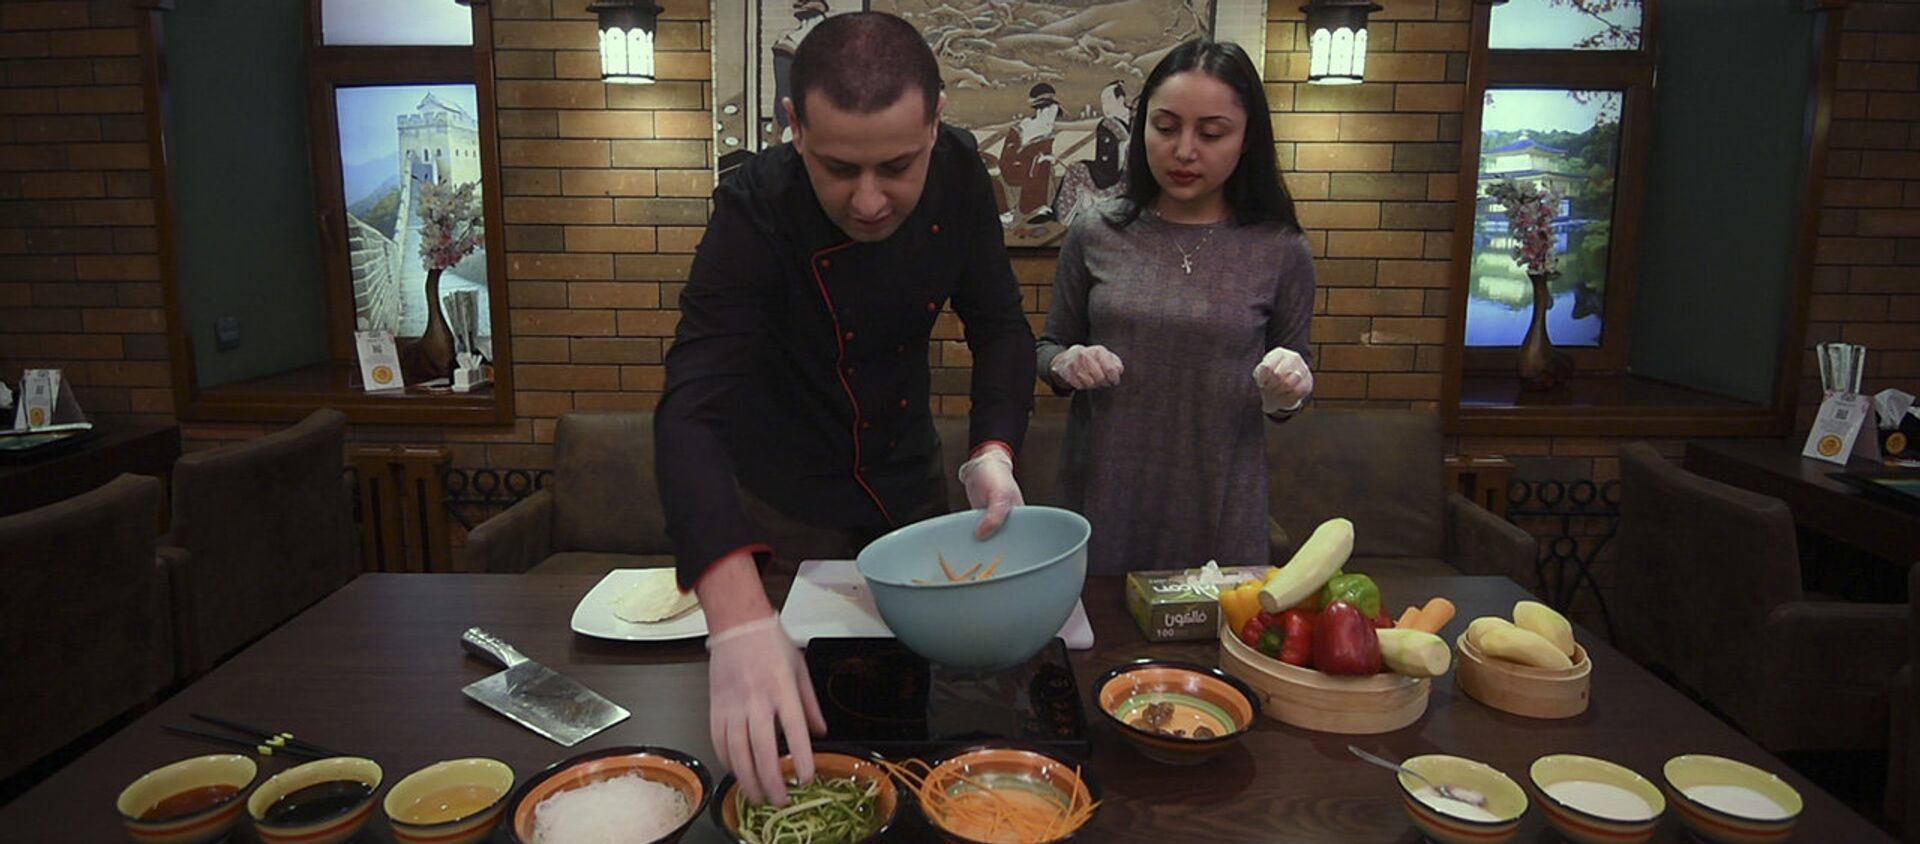 Հյուր շեֆ խոհարարին. ինչպես պատրաստել Հարբինյան աղցան և բանջարեղենը տապակել չինական ձևով - Sputnik Արմենիա, 1920, 11.03.2018